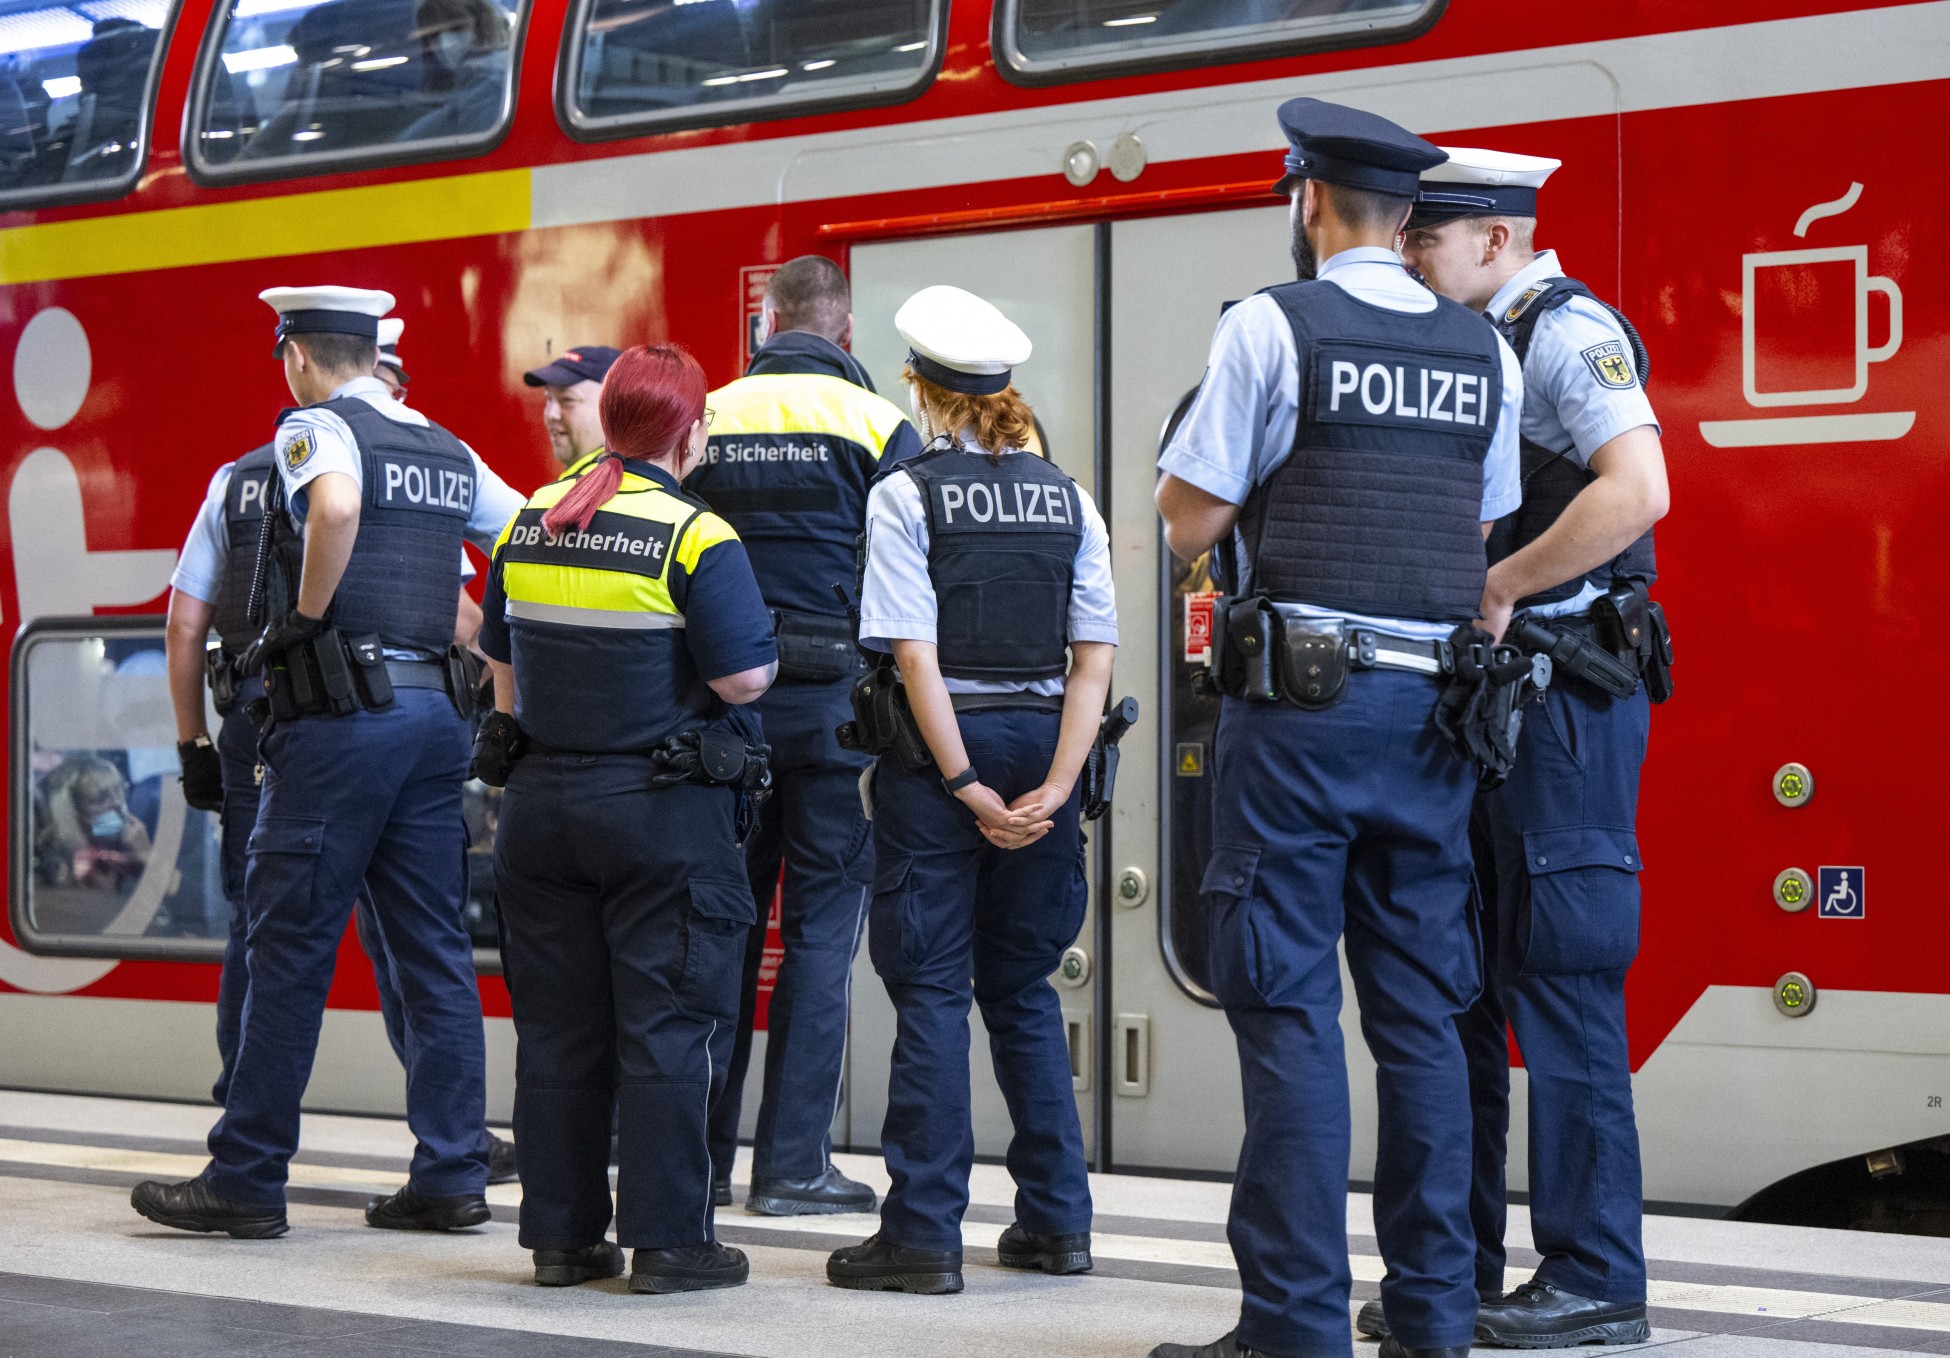 Βερολίνο: Όχημα έπεσε πάνω σε πλήθος πολιτών – Ένας νεκρός και τουλάχιστον 30 τραυματίες